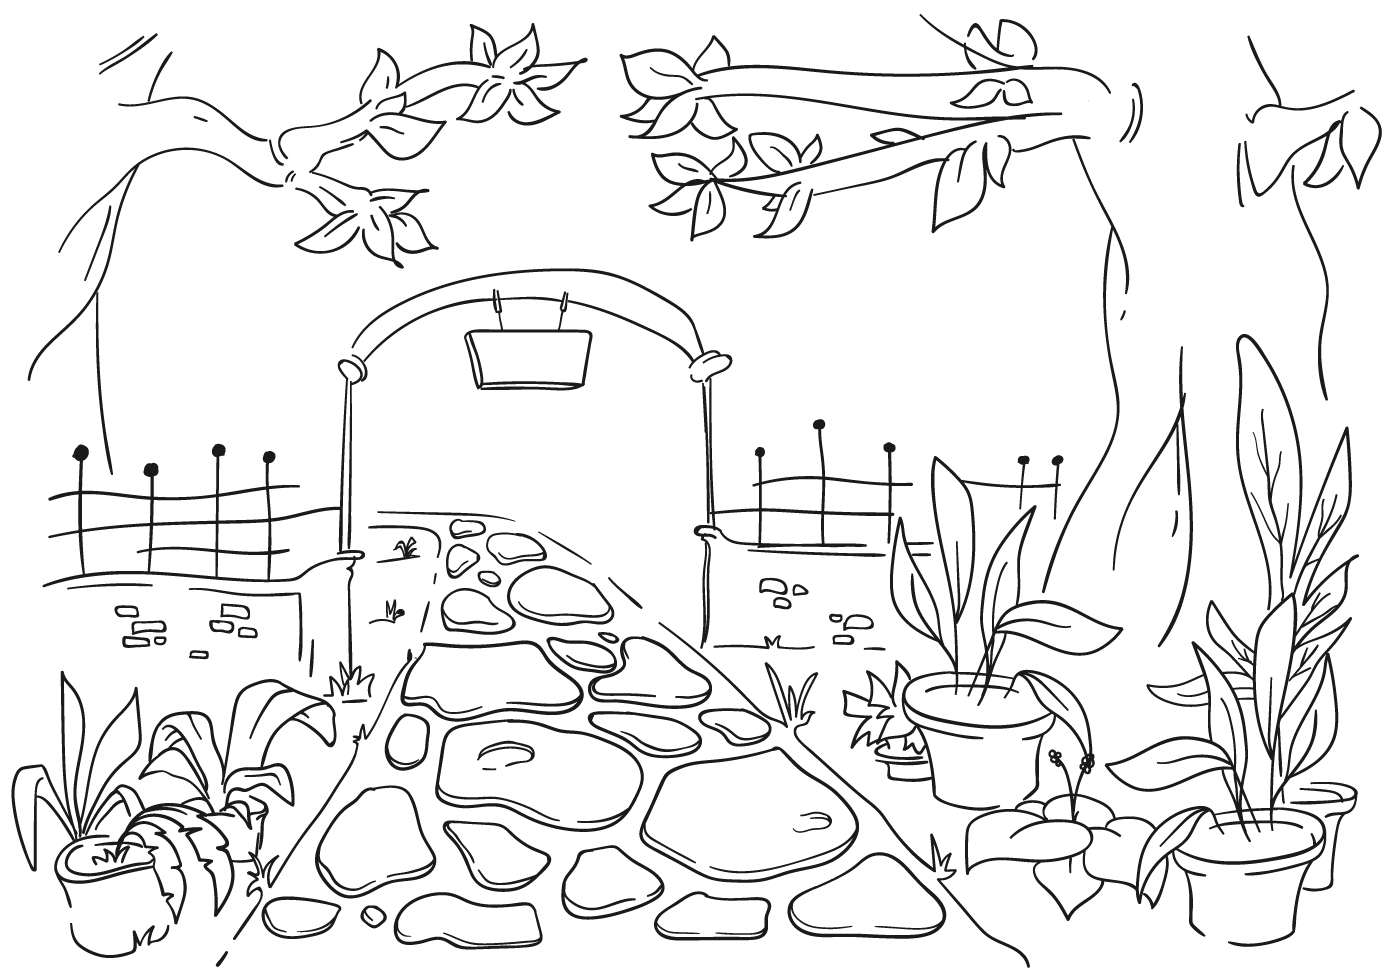 Share 141+ my dream garden drawing latest - seven.edu.vn